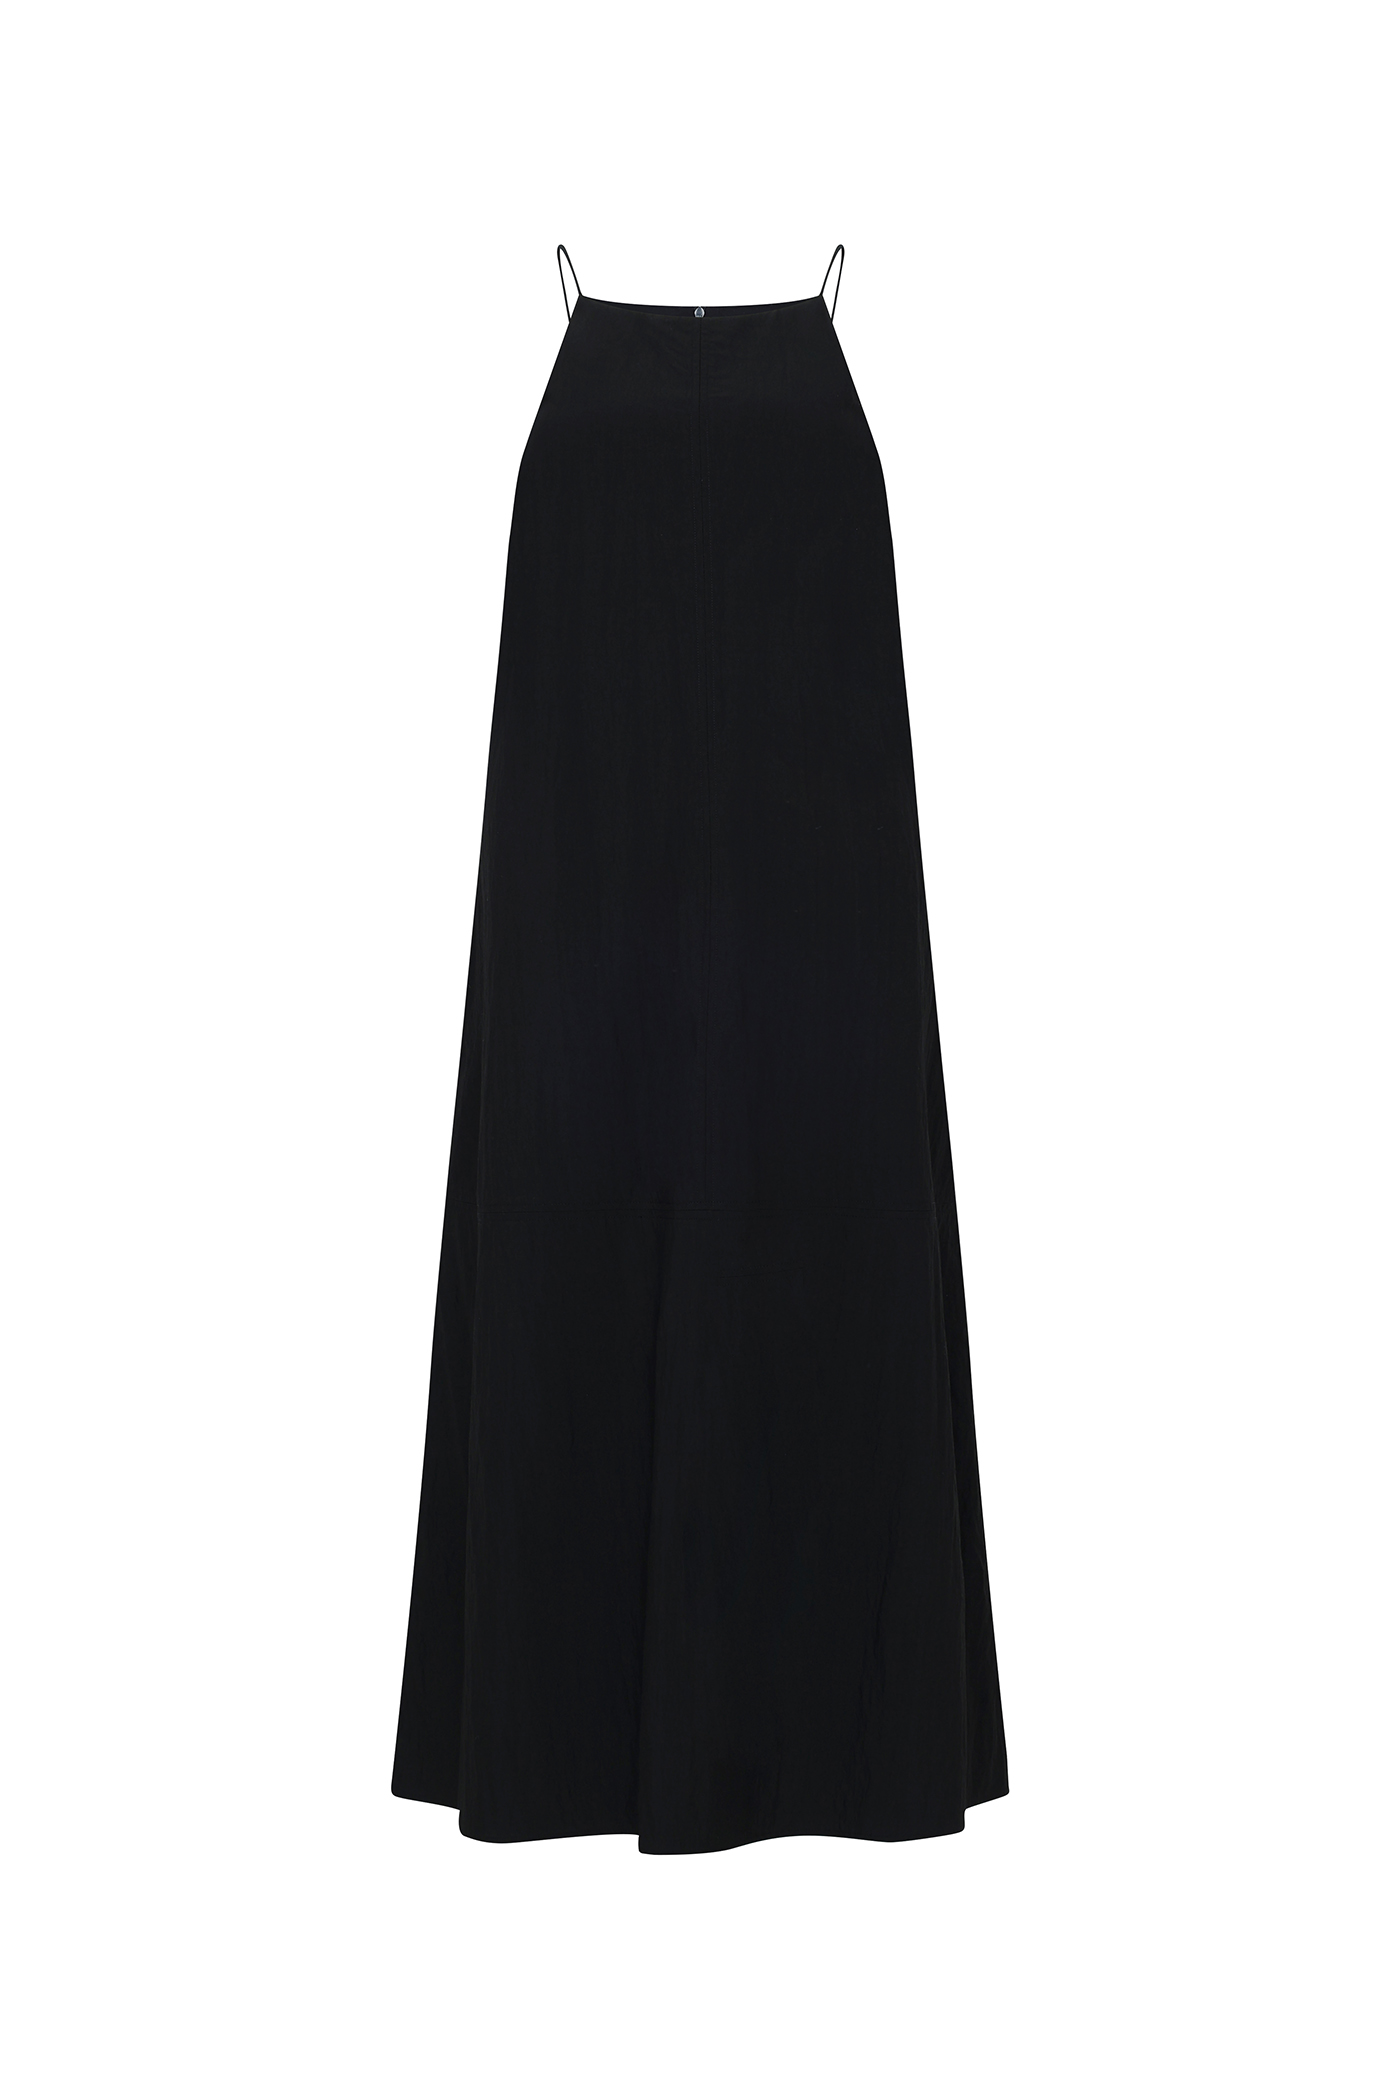 Halter Neck Sleeveless Dress[LMBCSUDR801]-Black